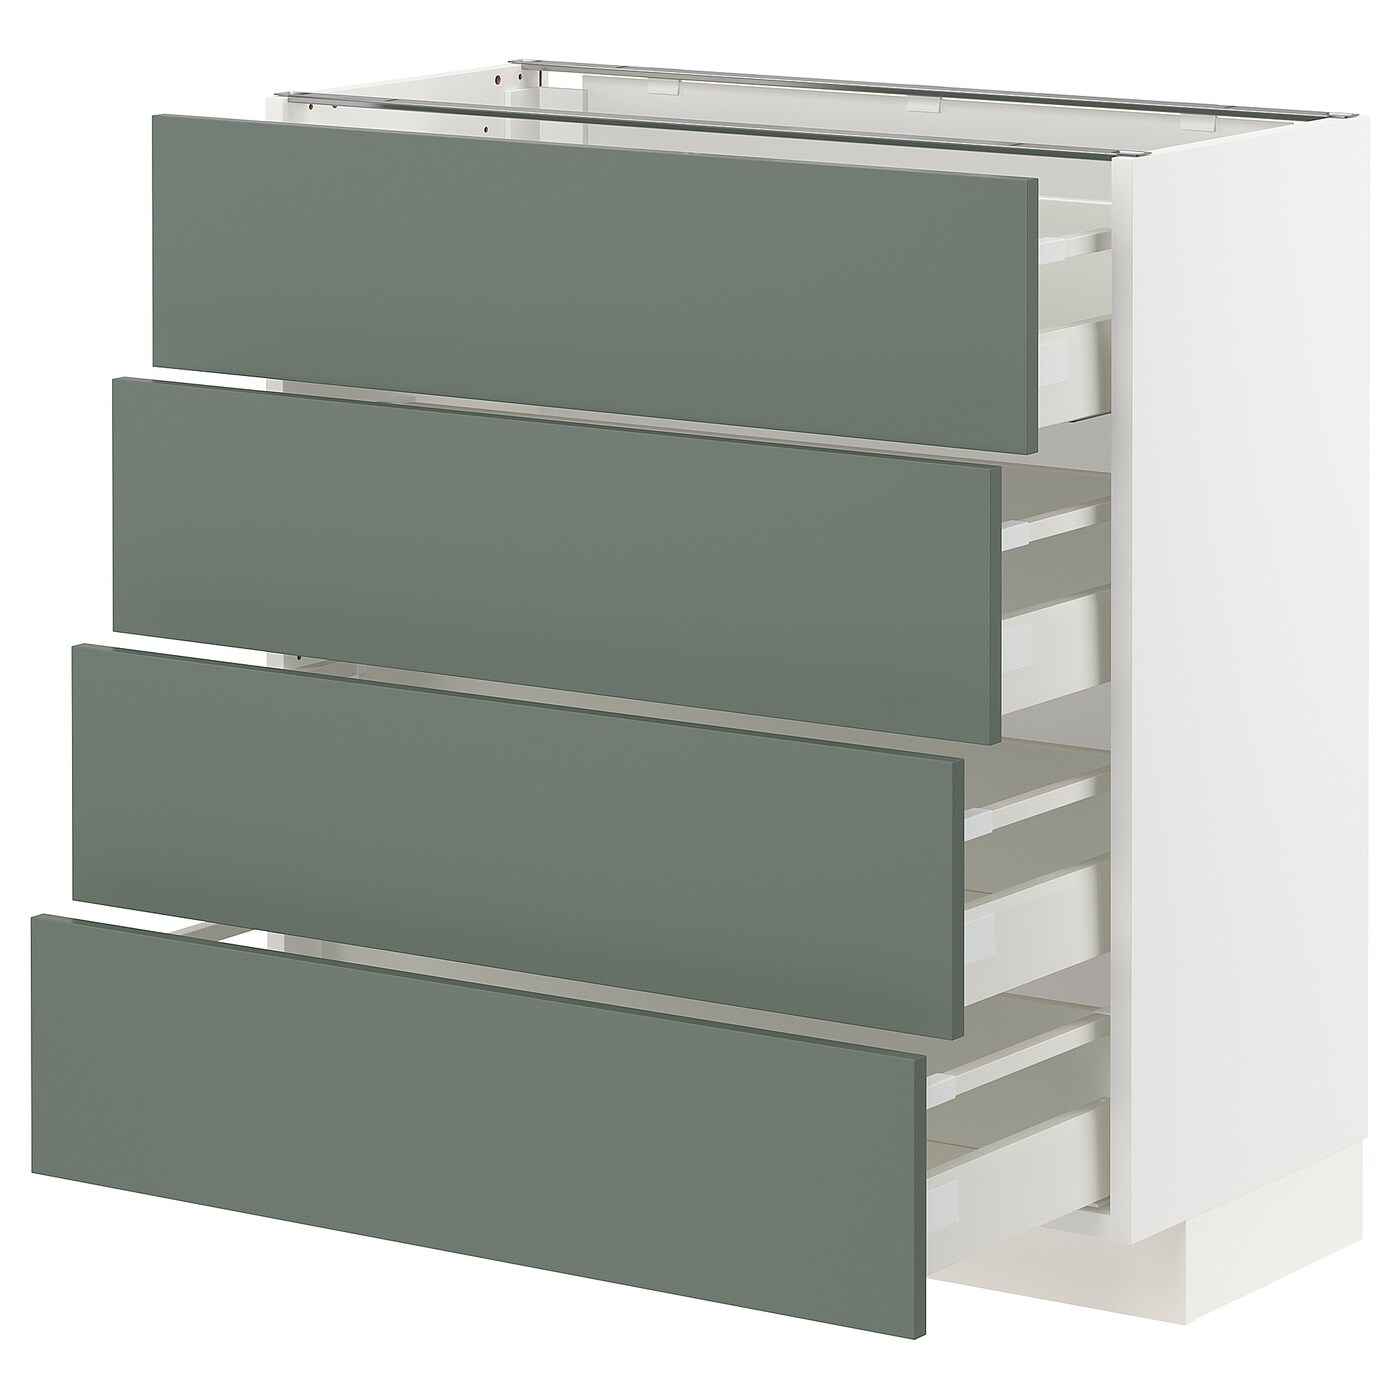 Напольный кухонный шкаф  - IKEA METOD MAXIMERA, 88x39,2x80см, белый/серый, МЕТОД МАКСИМЕРА ИКЕА